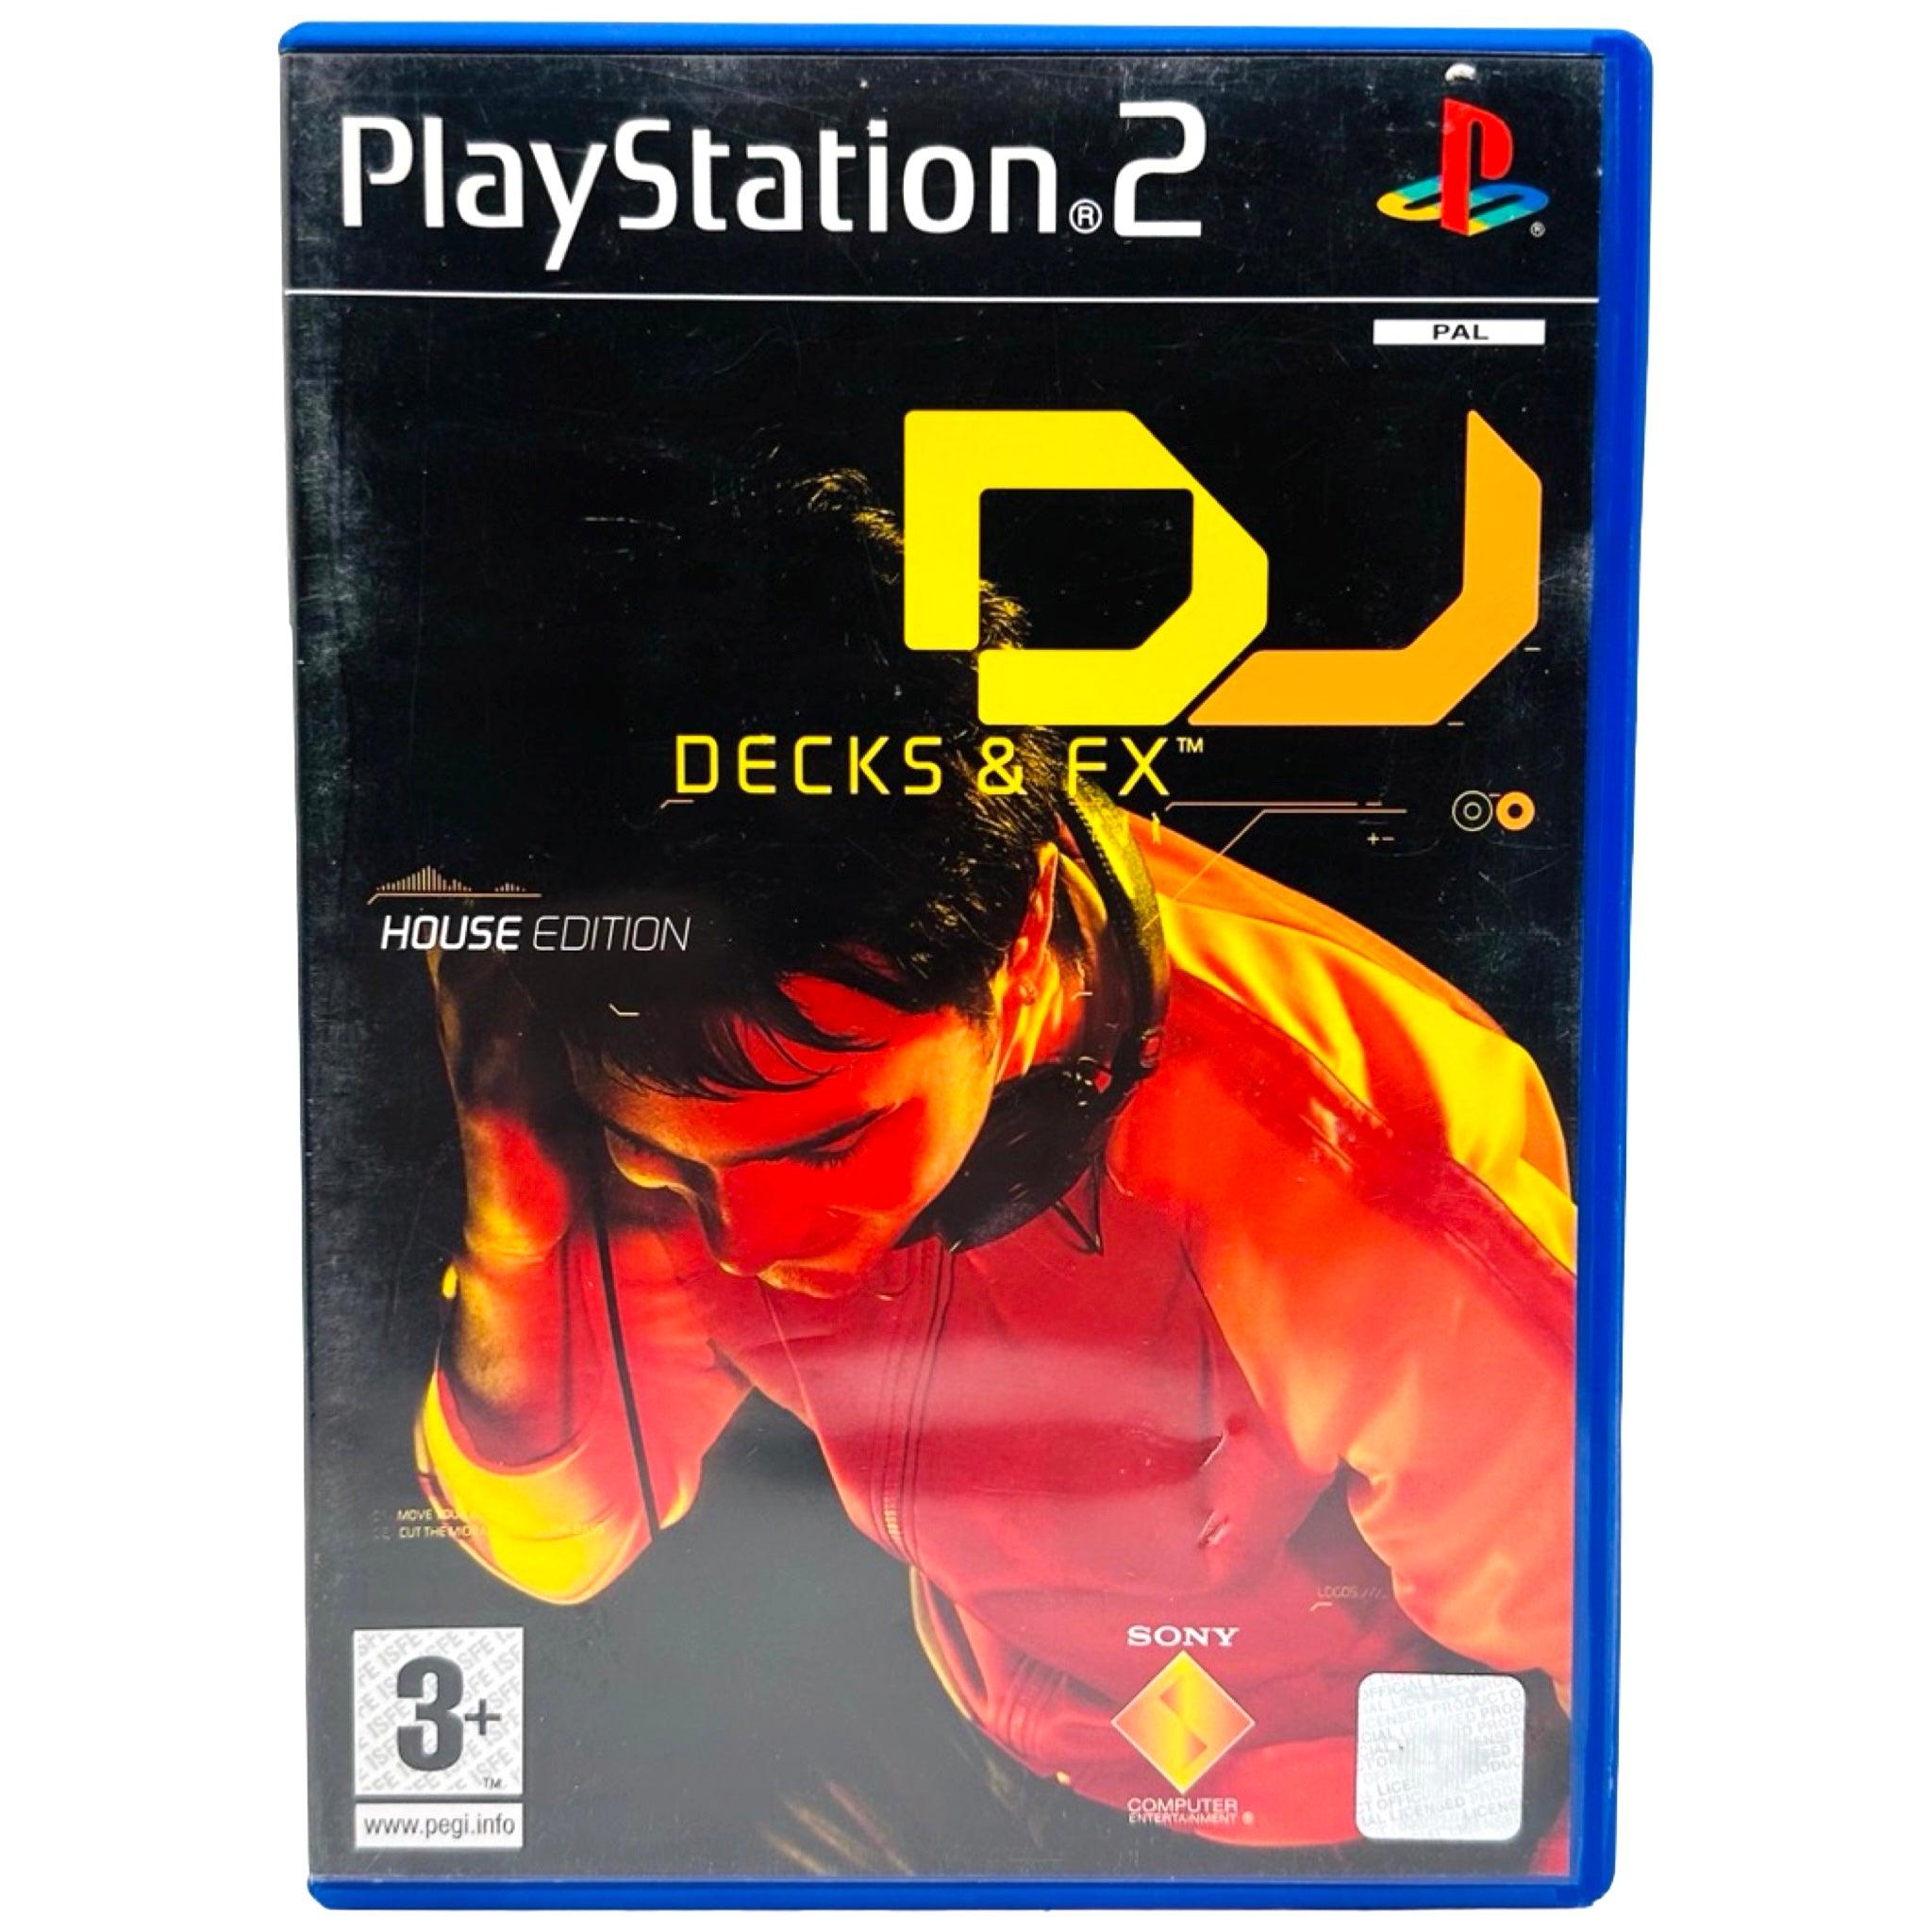 PS2: DJ Decks & FX - RetroGaming.no